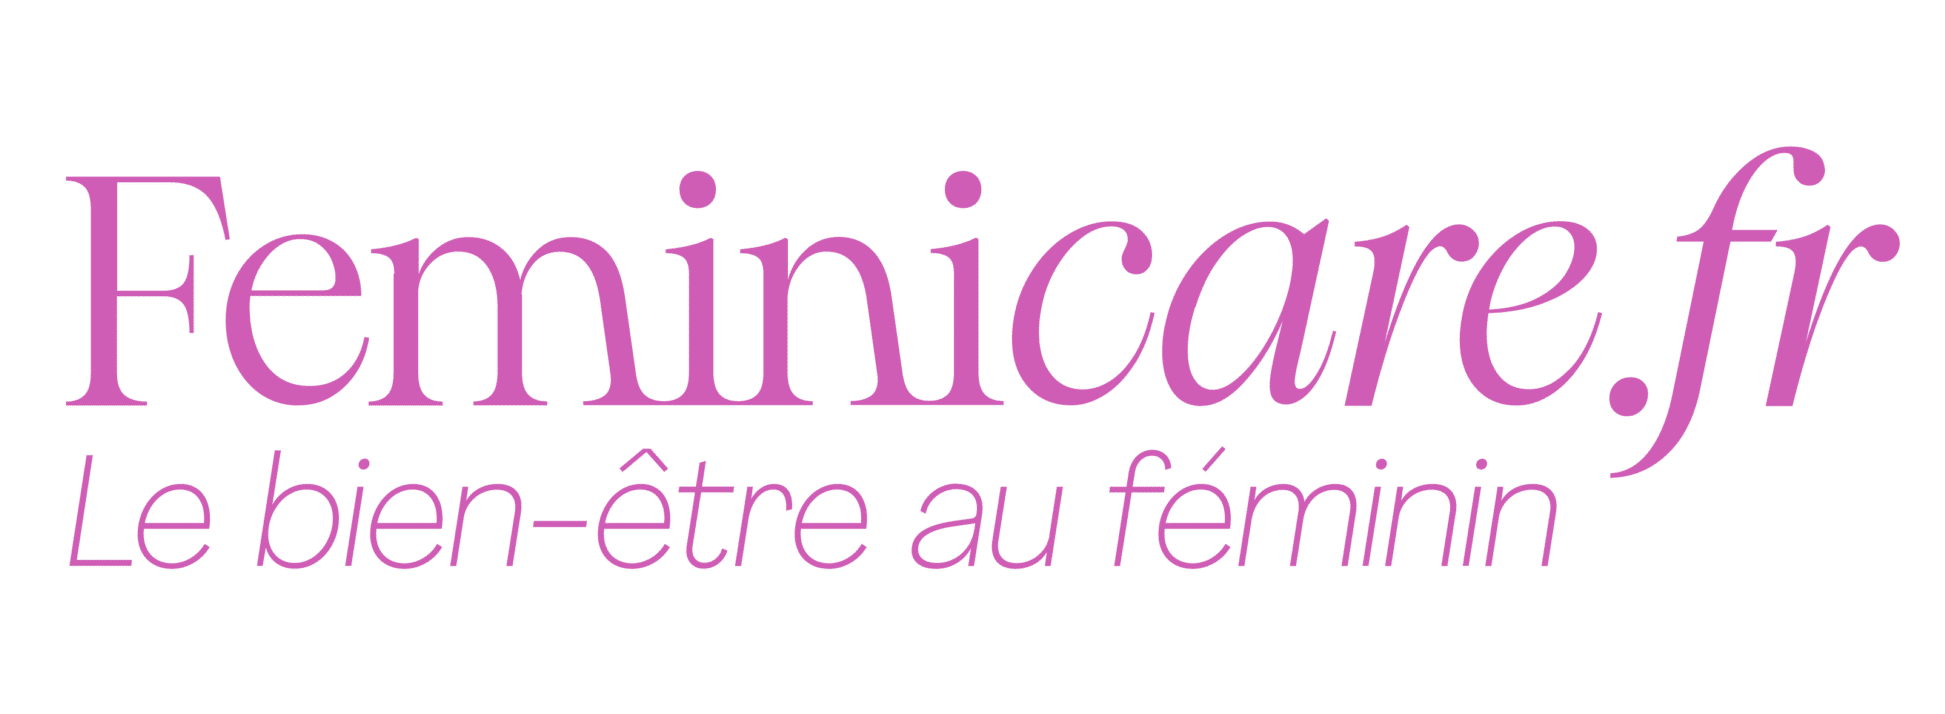 Logo de feminicare.fr en écriture cursive rose sur fond noir, soulignant le bien-être des femmes en français.